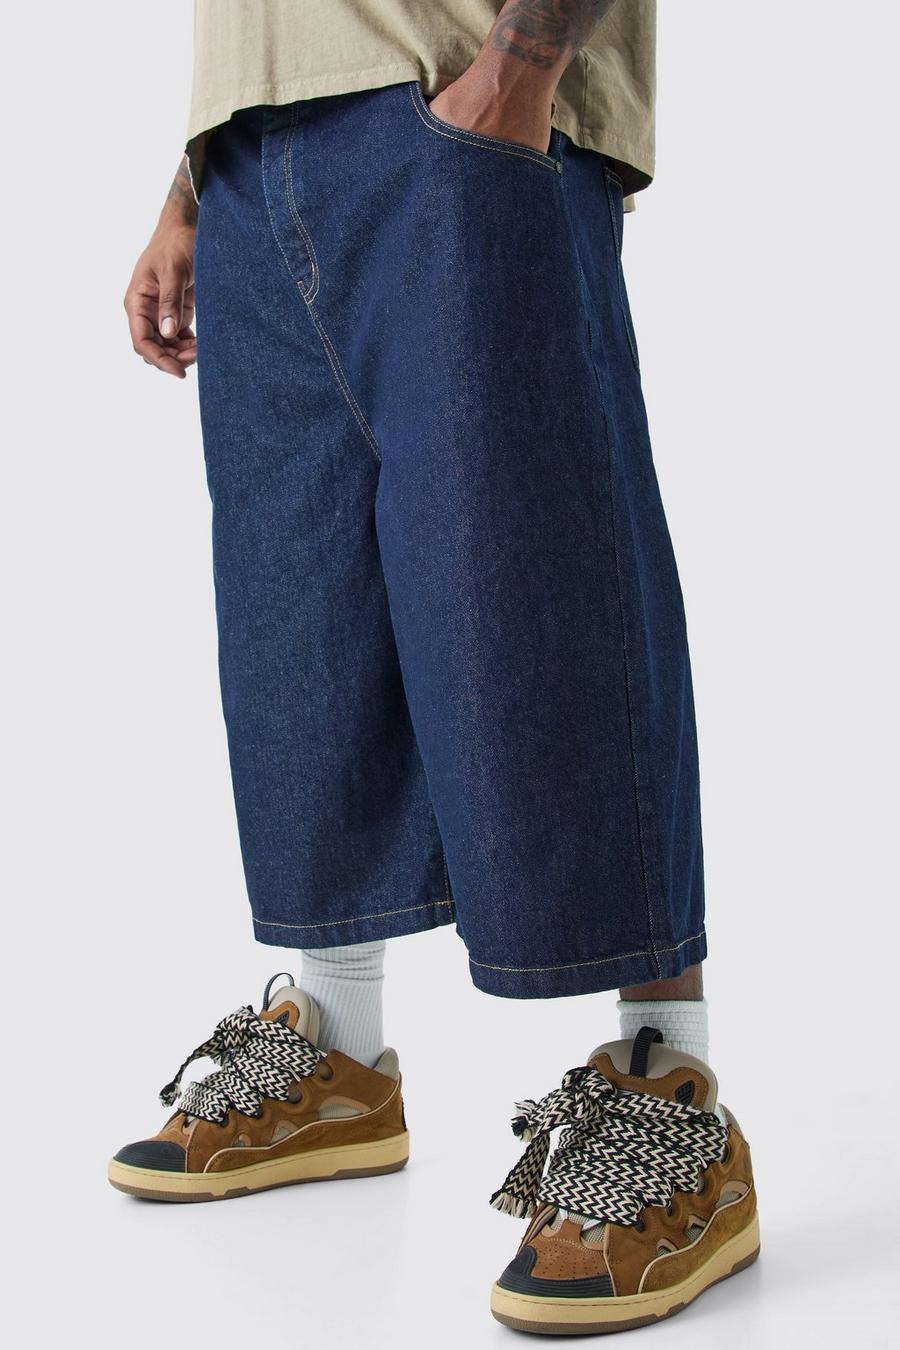 Pantaloni tuta lunghi Plus Size in denim indaco, Indigo